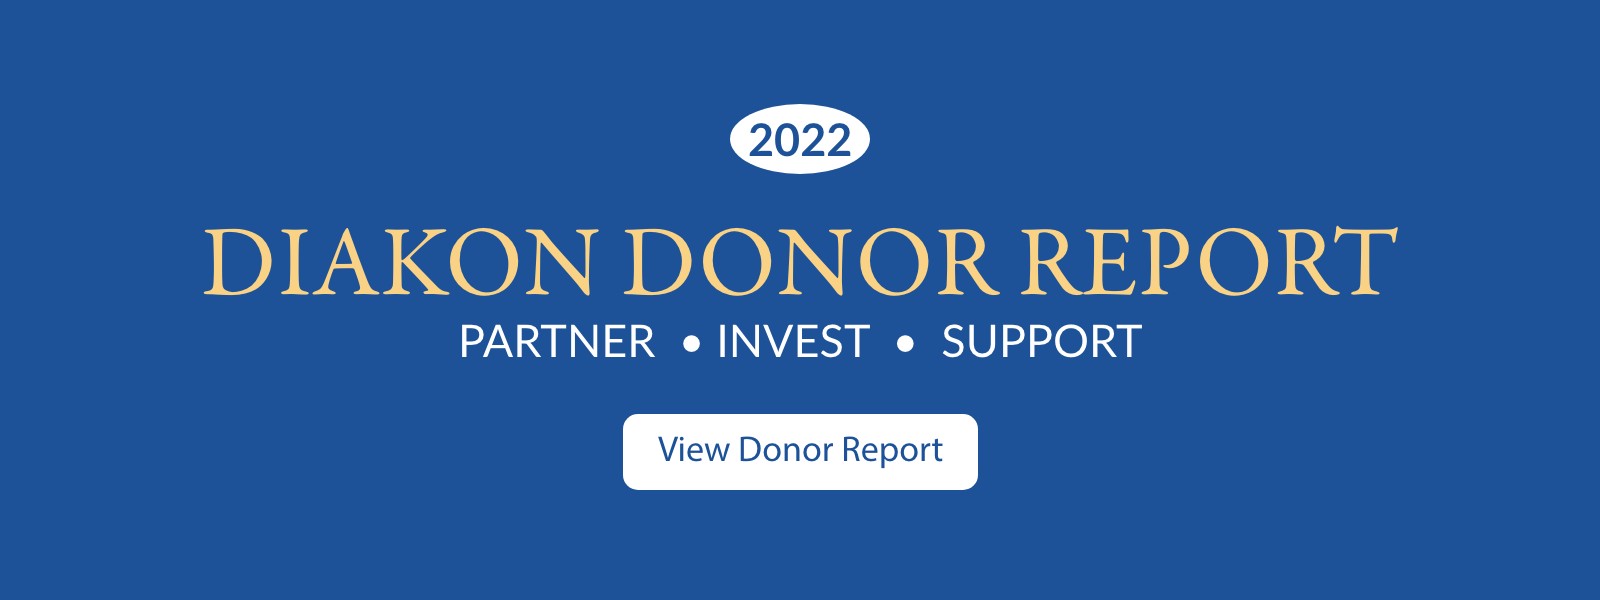 Diakon Donor Report